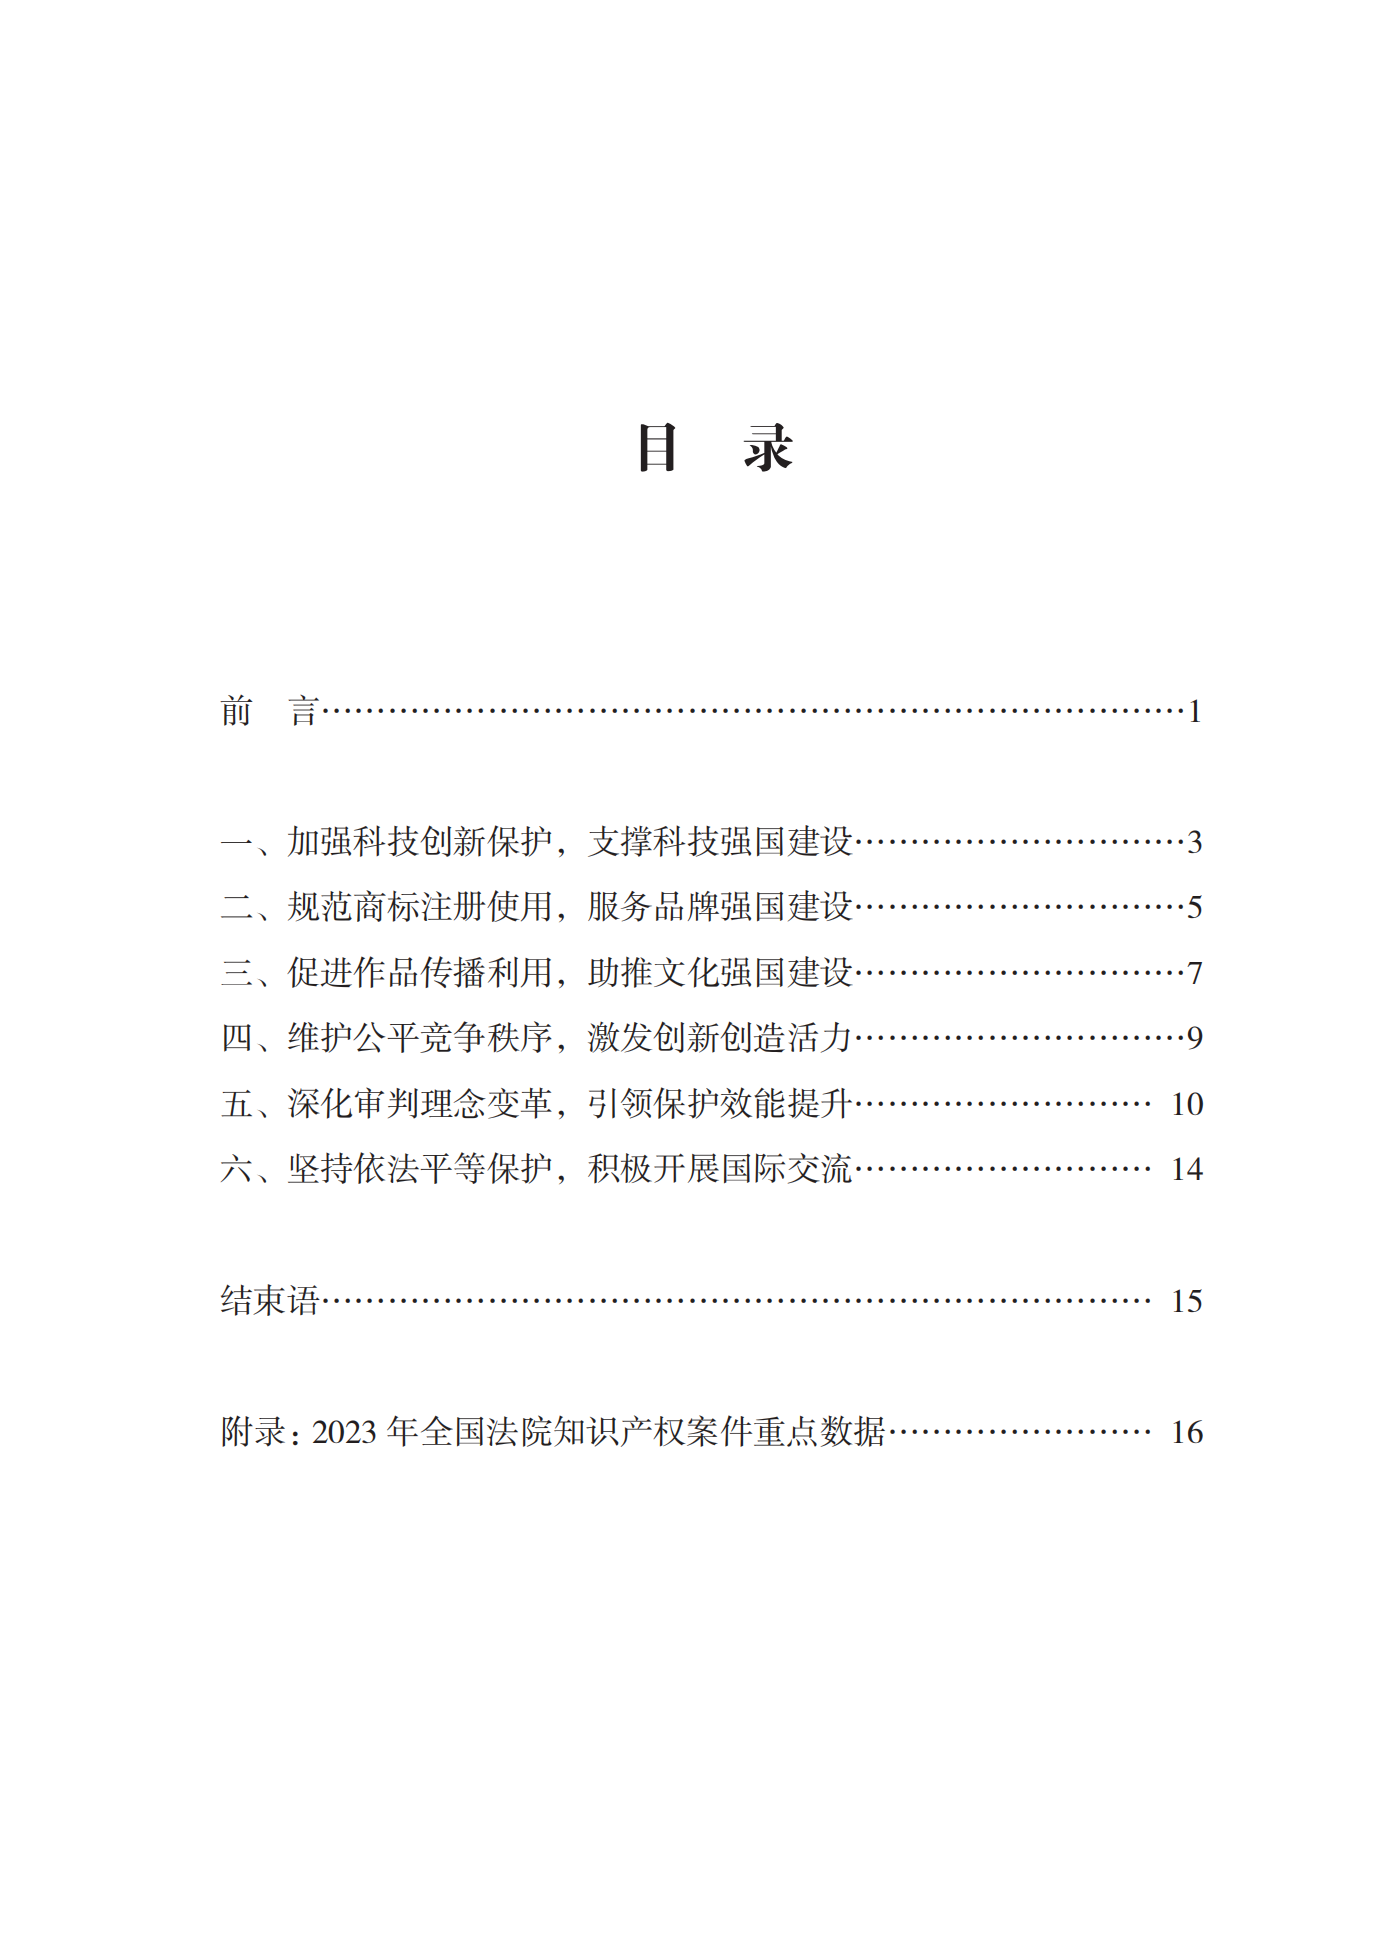 《中国法院知识产权司法保护状况(2023年)》全文发布！